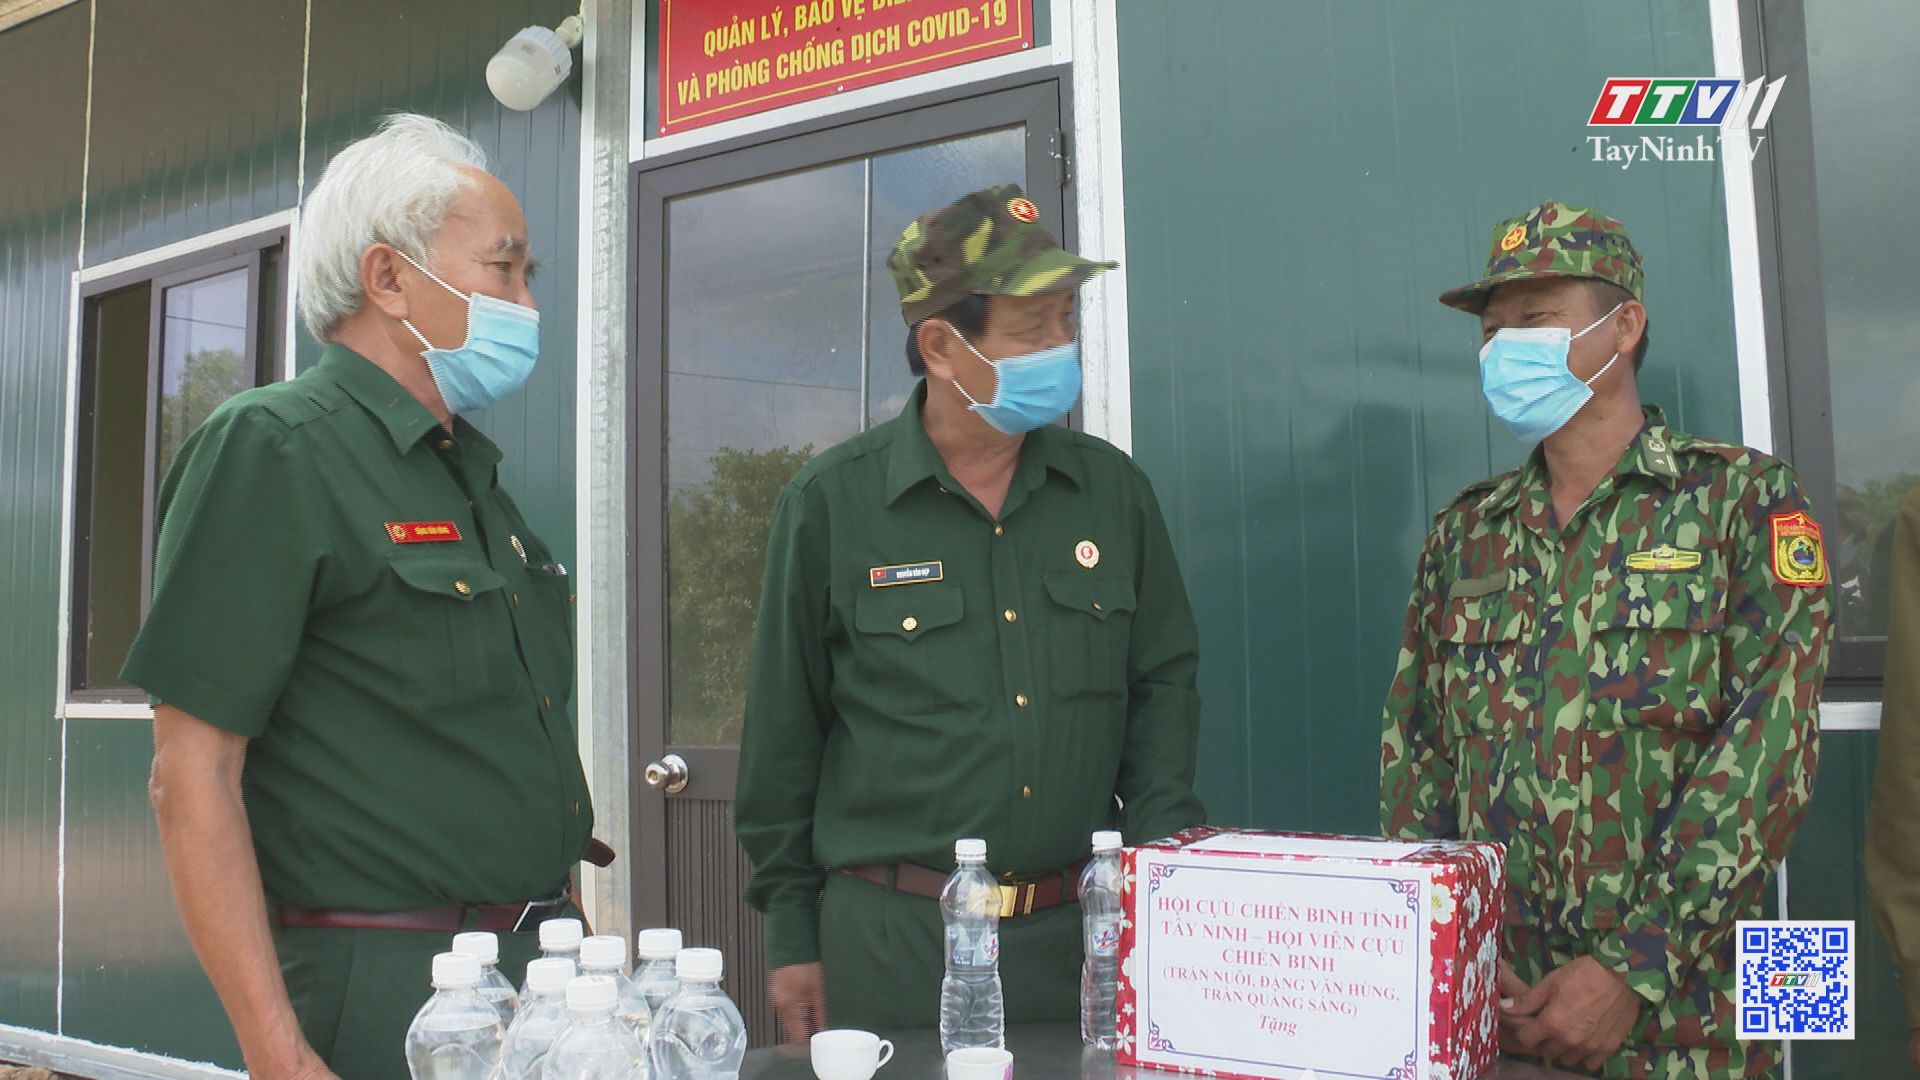 Hội Cựu chiến binh tỉnh Tây Ninh tích cực tham gia phòng chống dịch Covid-19 | TayNinhTV